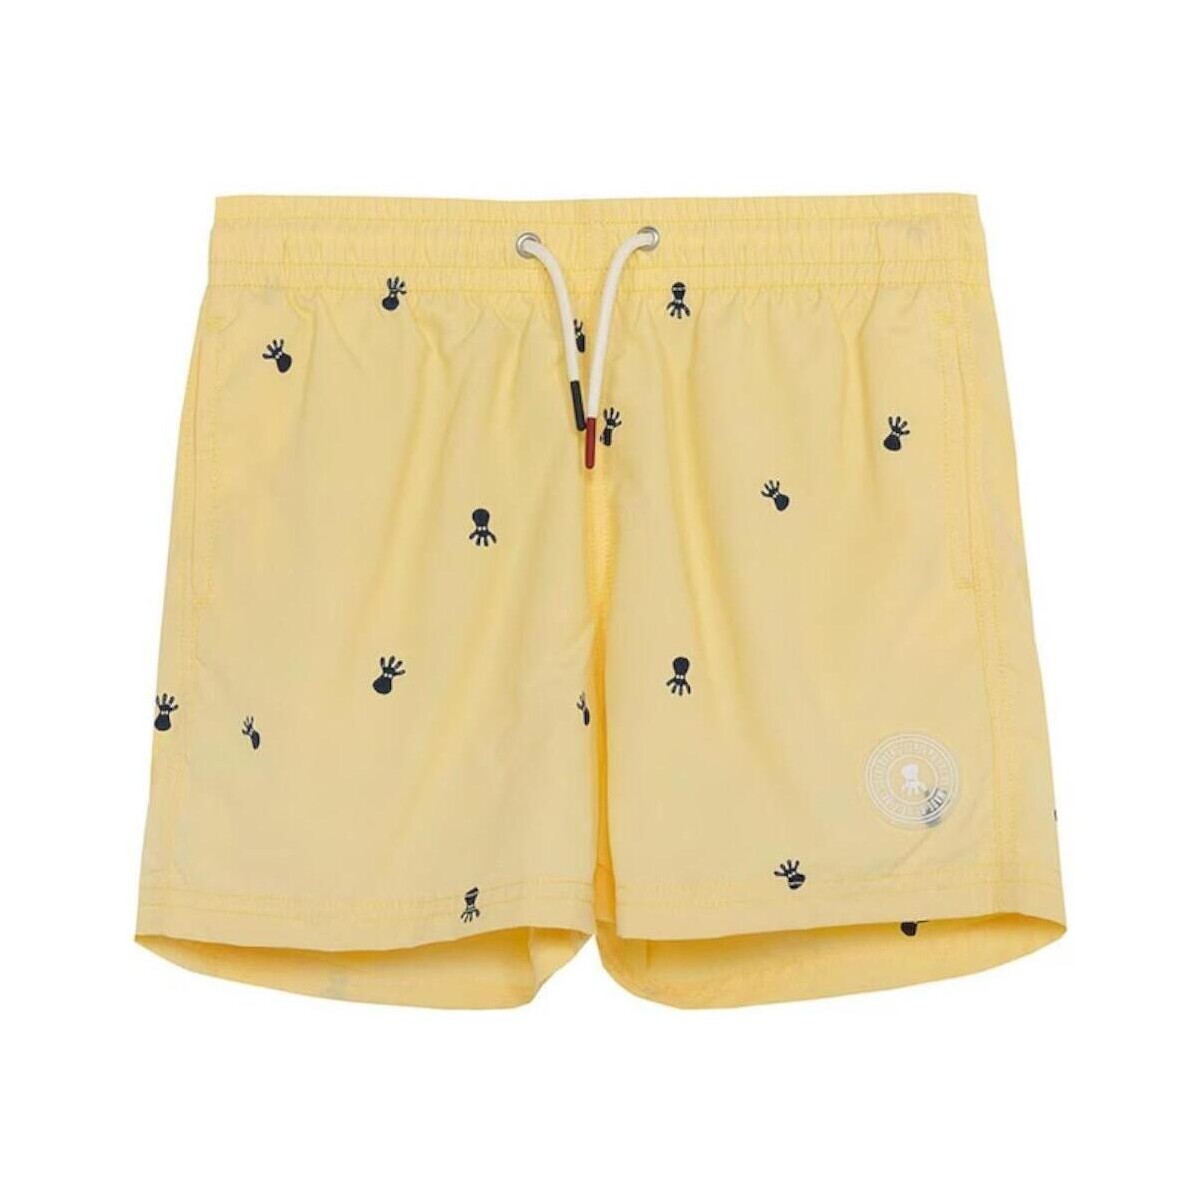 Υφασμάτινα Αγόρι Μαγιώ / shorts για την παραλία Elpulpo  Yellow